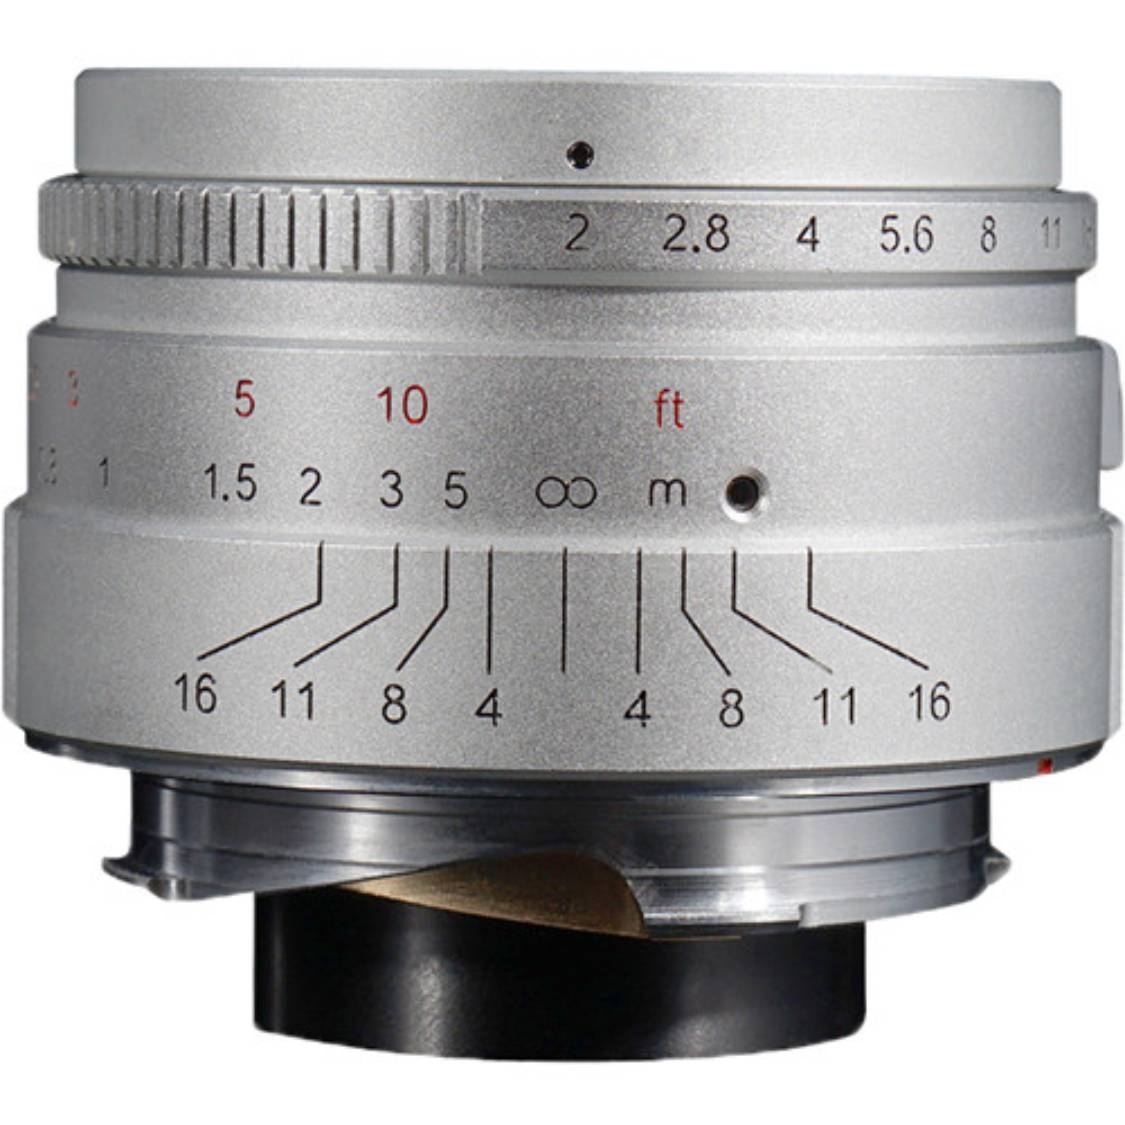 7artisans 35mm f/2 Lens for Leica M (Silver)